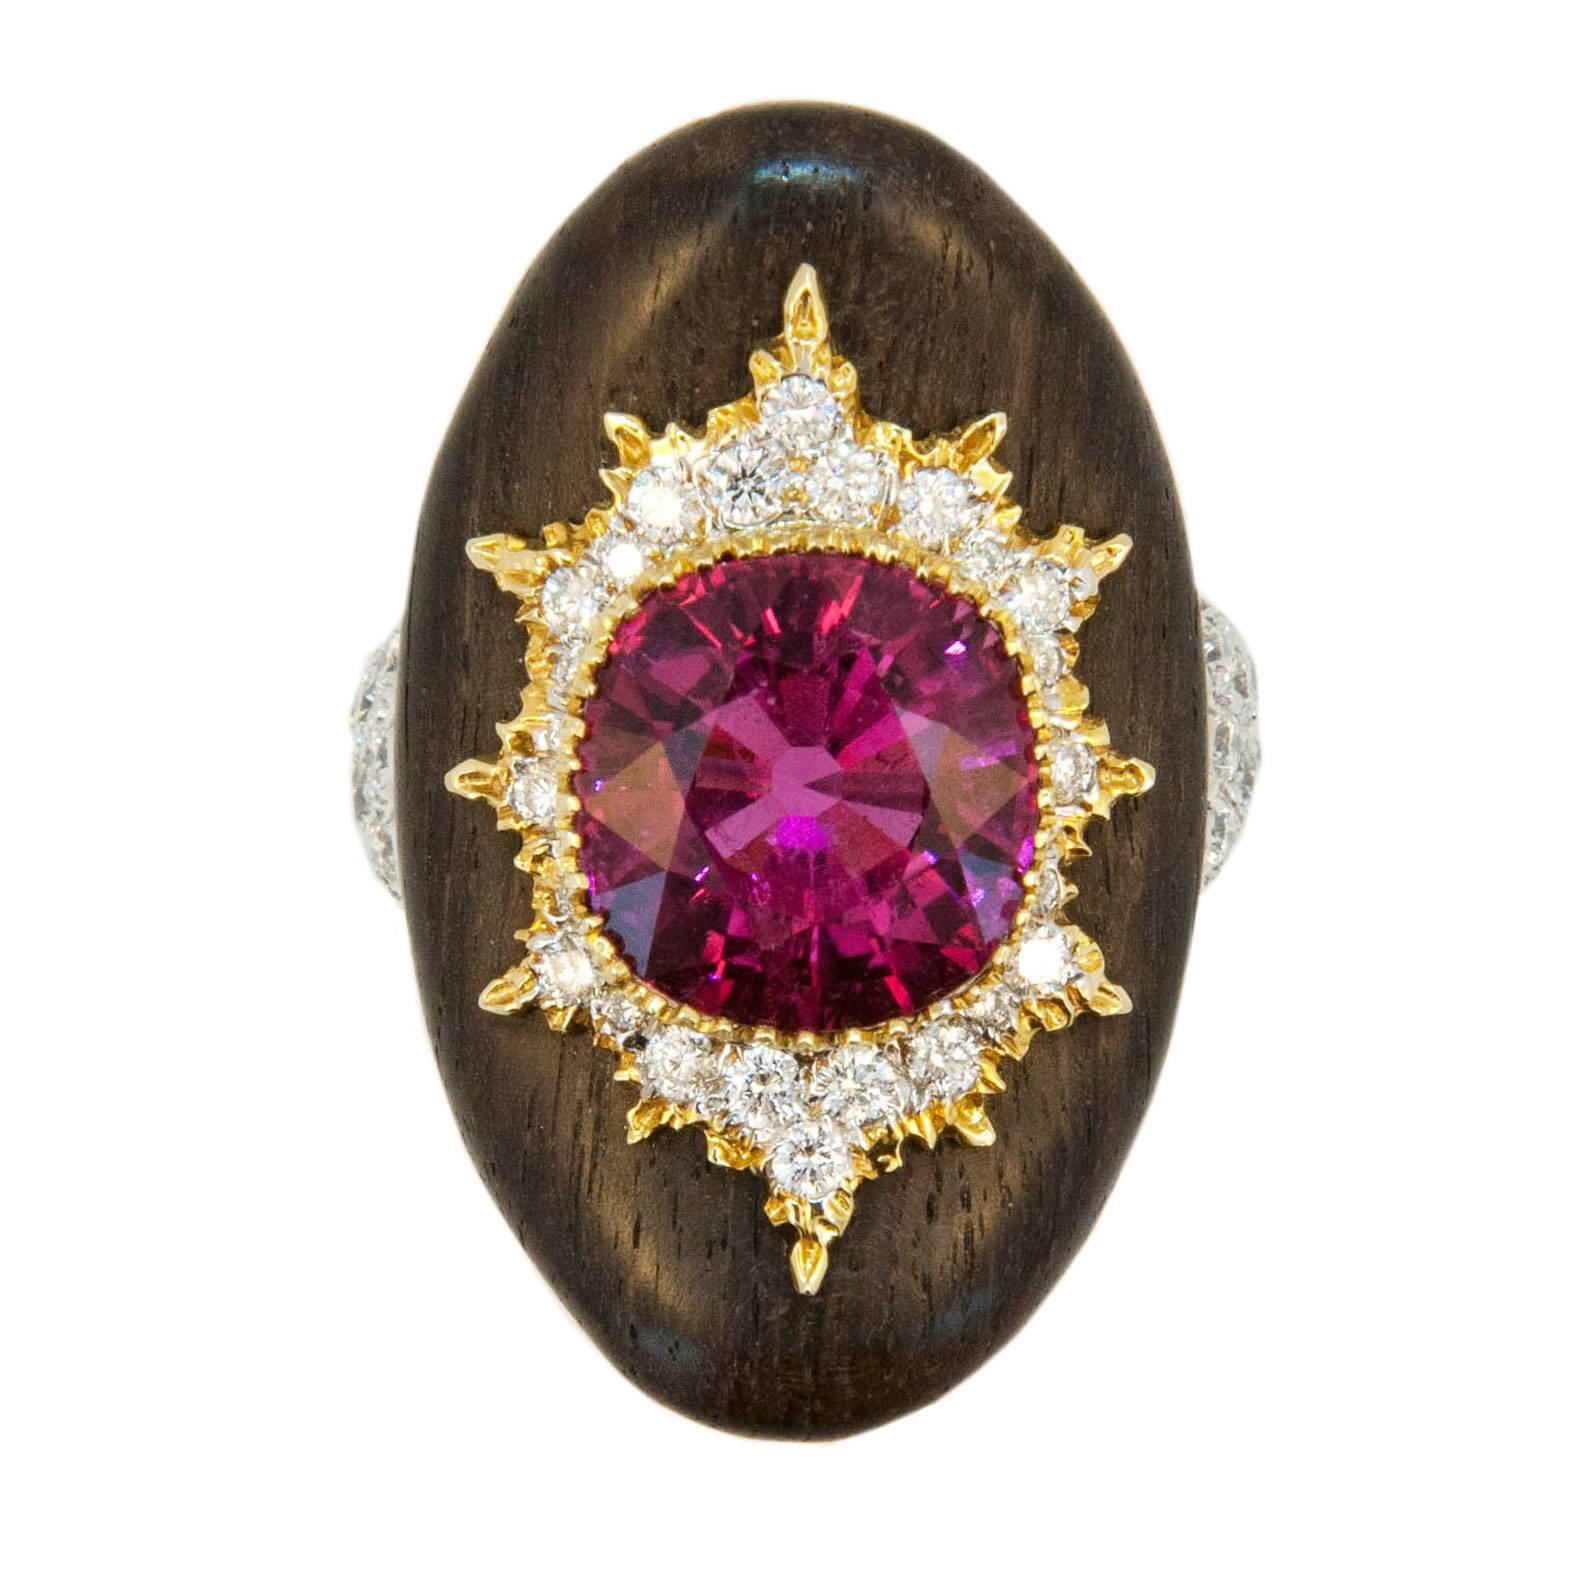  Laura Munder Rubellite Tourmaline Diamond and Grenadill Wood Ring 